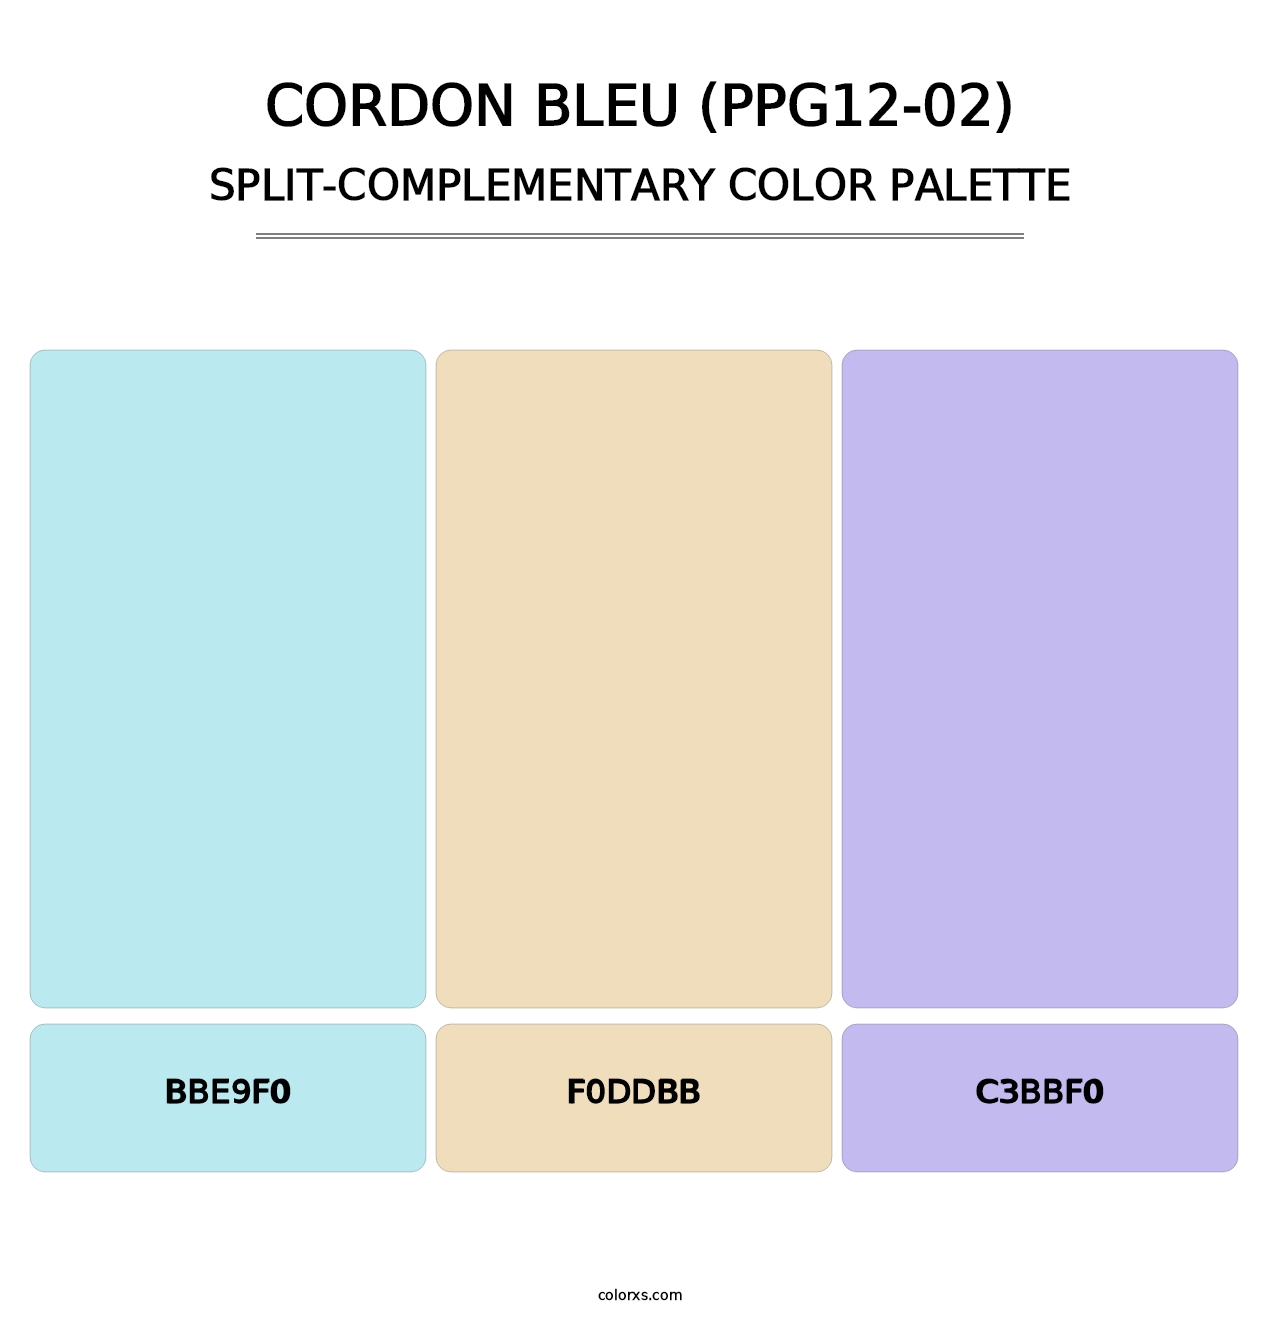 Cordon Bleu (PPG12-02) - Split-Complementary Color Palette